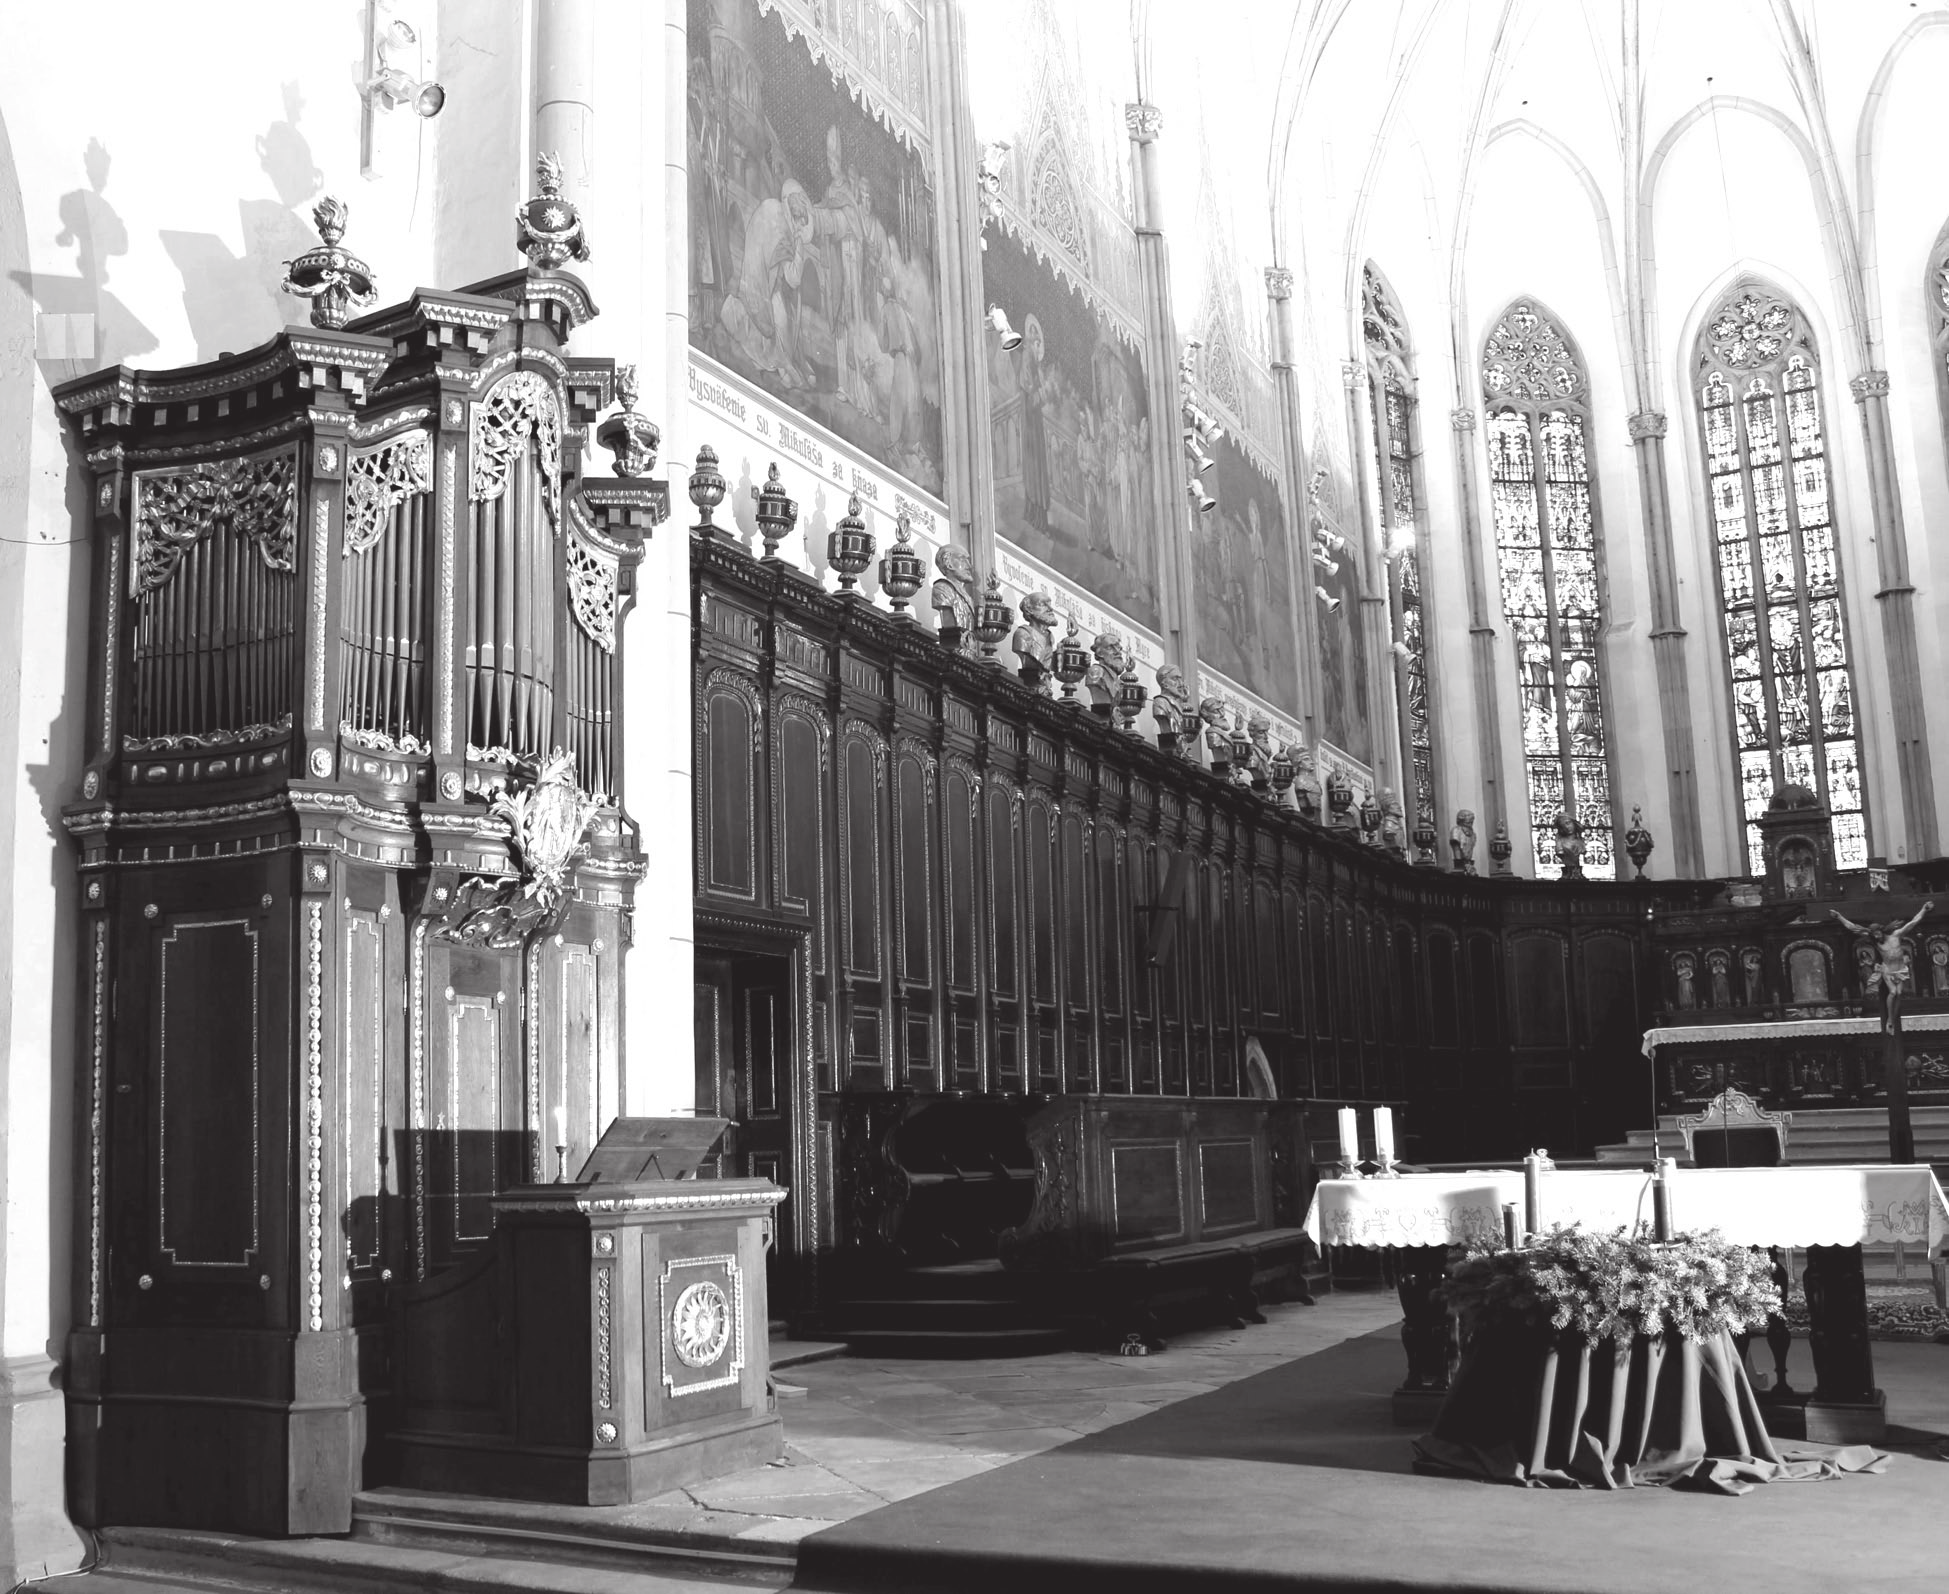 Organy v trnavskej bazilike Najstaršia zmienka o organe v Trnave je z druhej polovice 16. storočia. Daňové registre mesta uvádzajú medzi inými 36 profesiami i organárov.